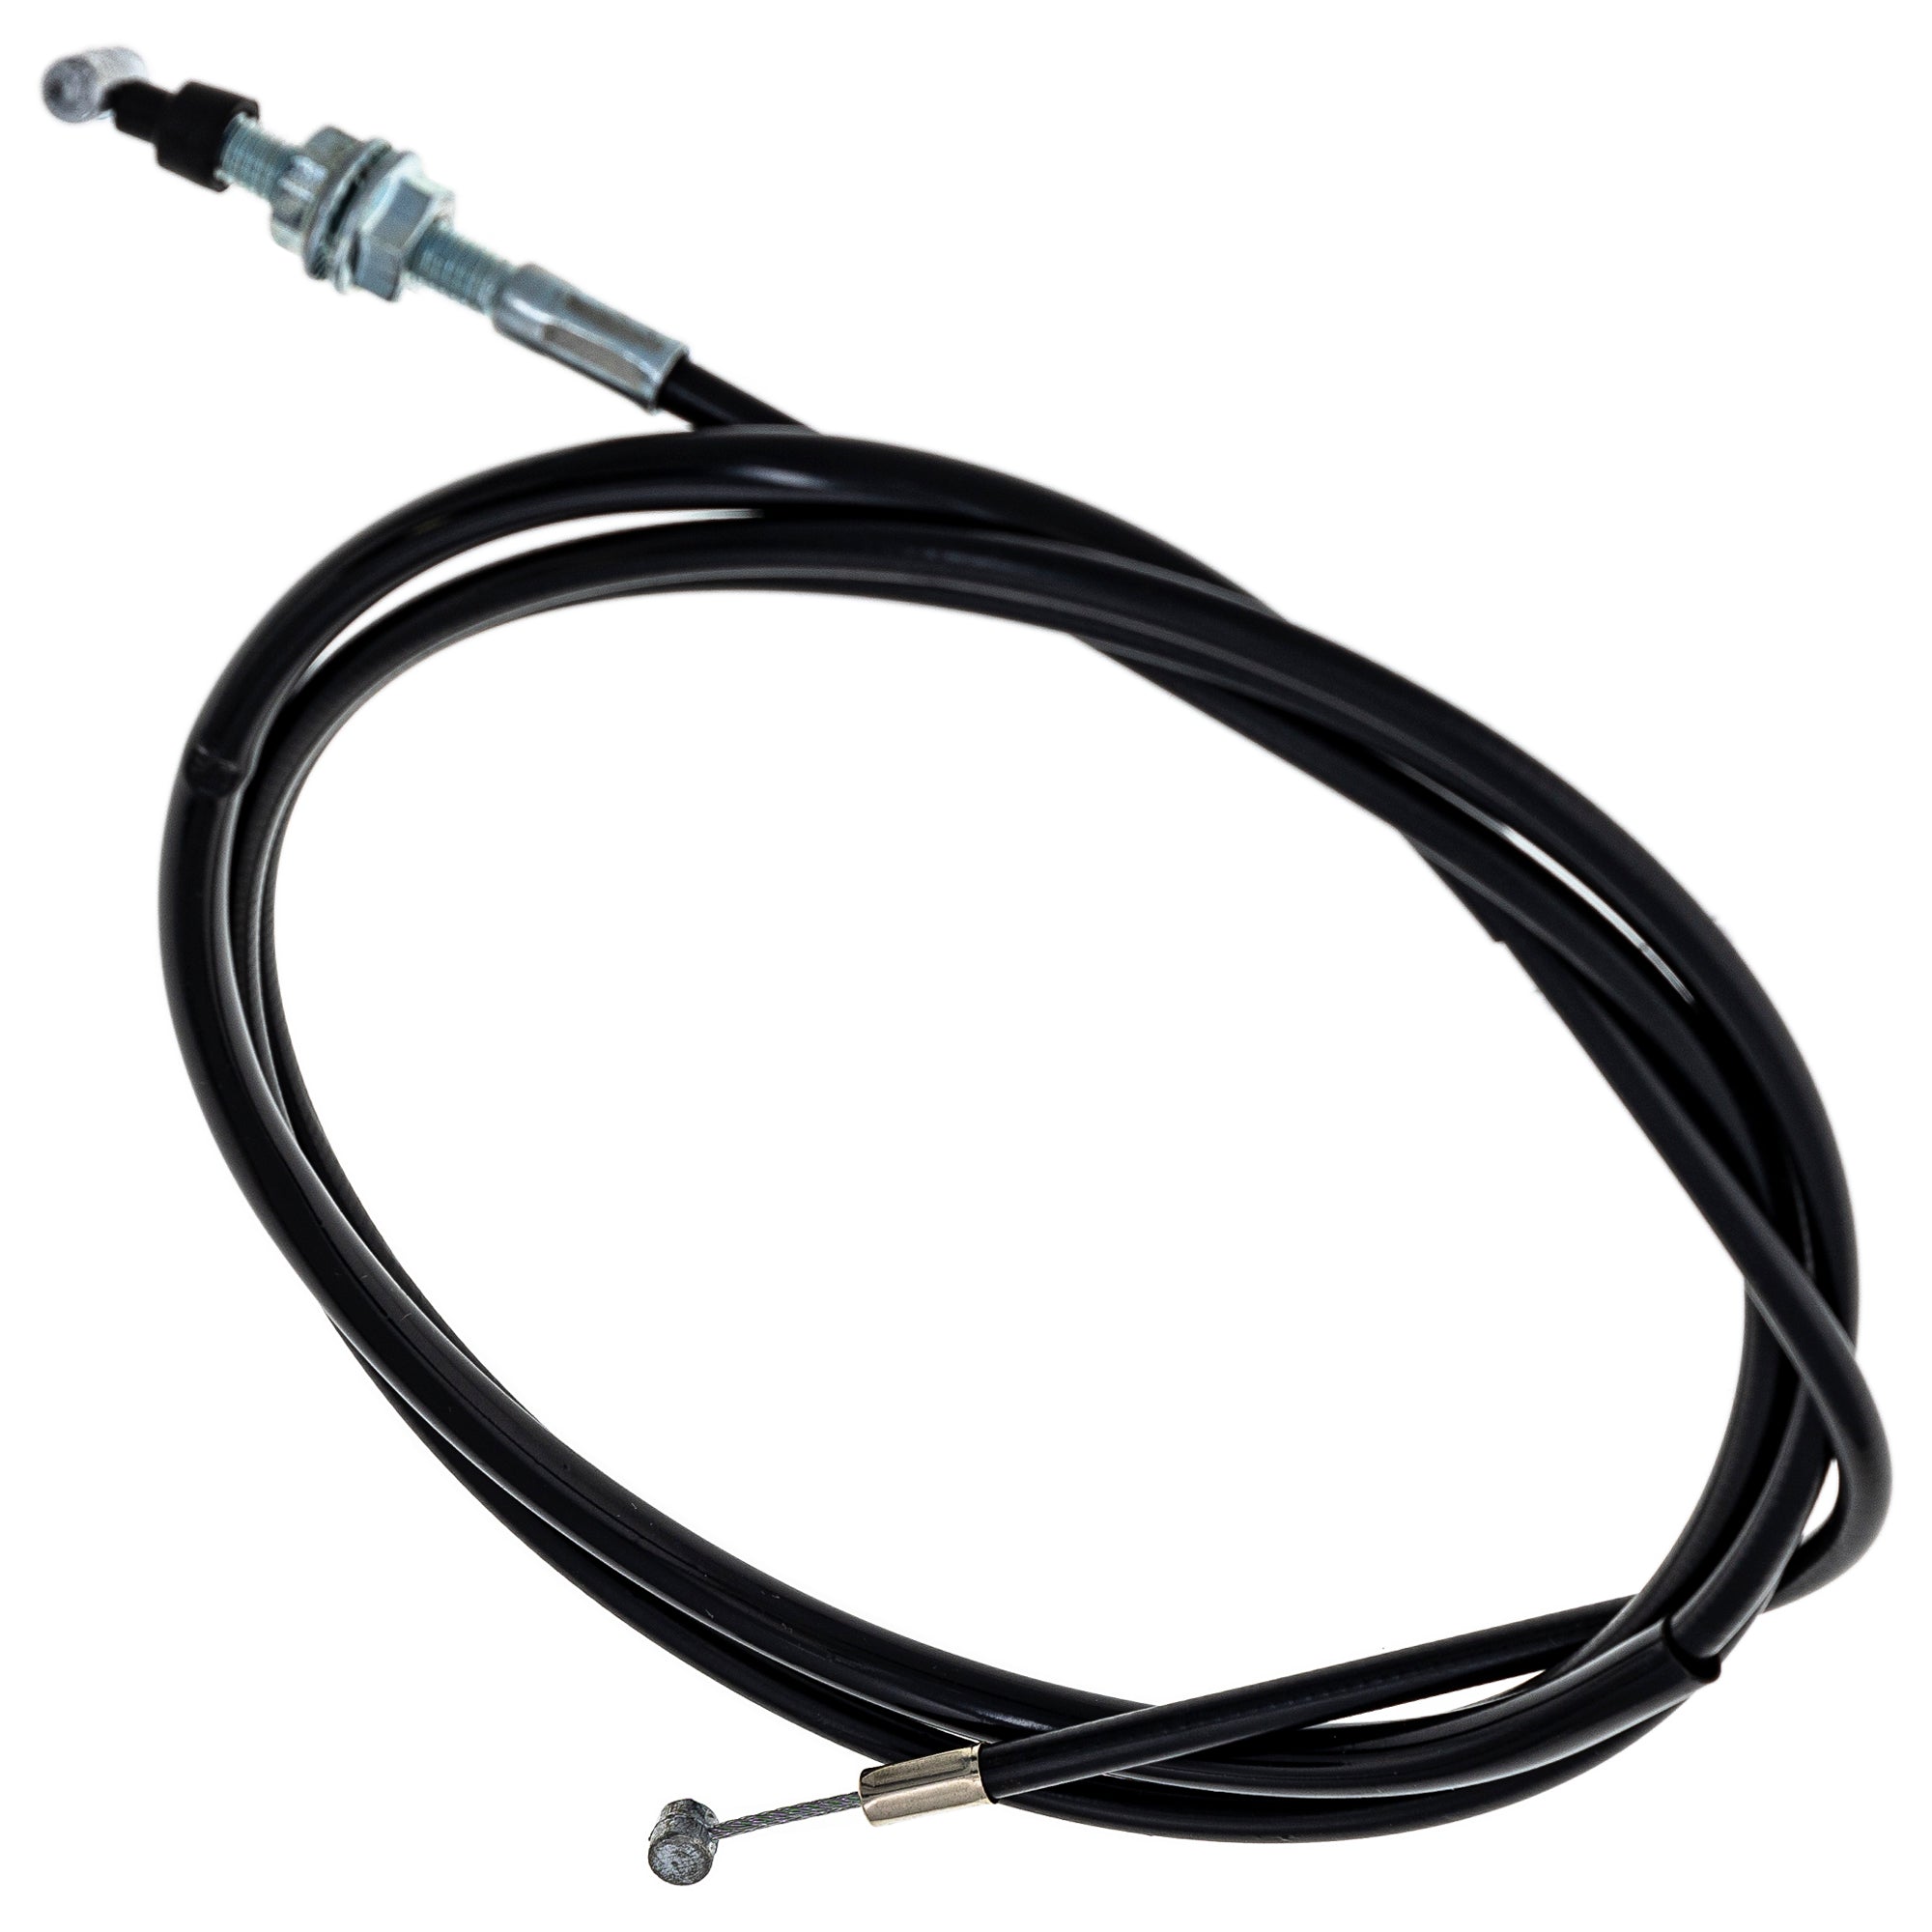 Reverse Cable for Honda TRX300 TRX300EX TRX300FW 22880-HC5-970